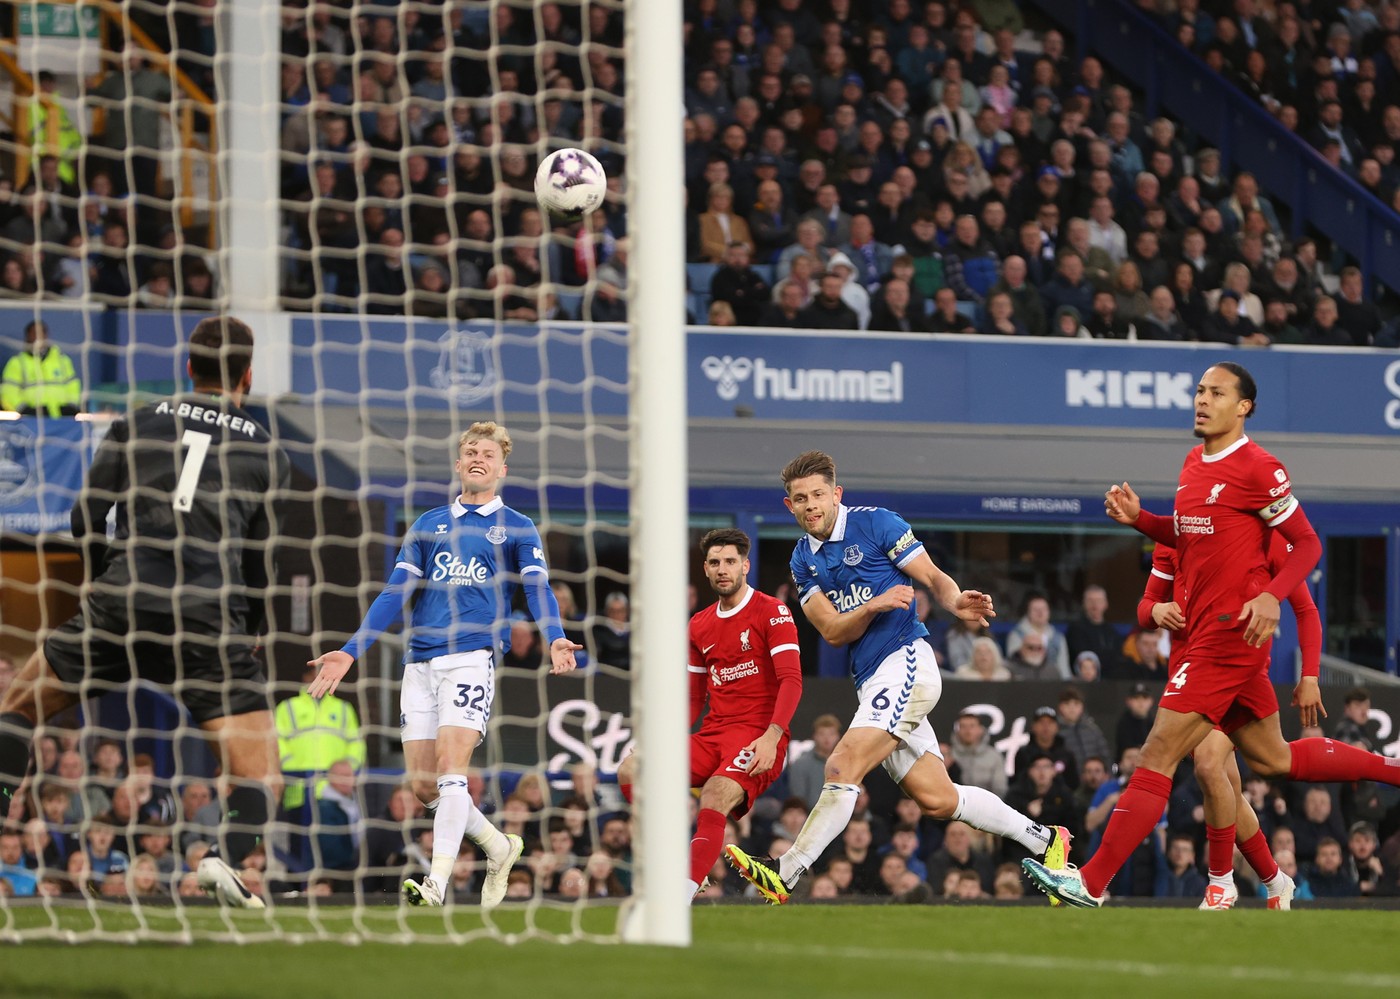 Everton - Liverpool 1-0, ACUM, DGS 2. ”Cormoranii”, în dificultate după prima repriză